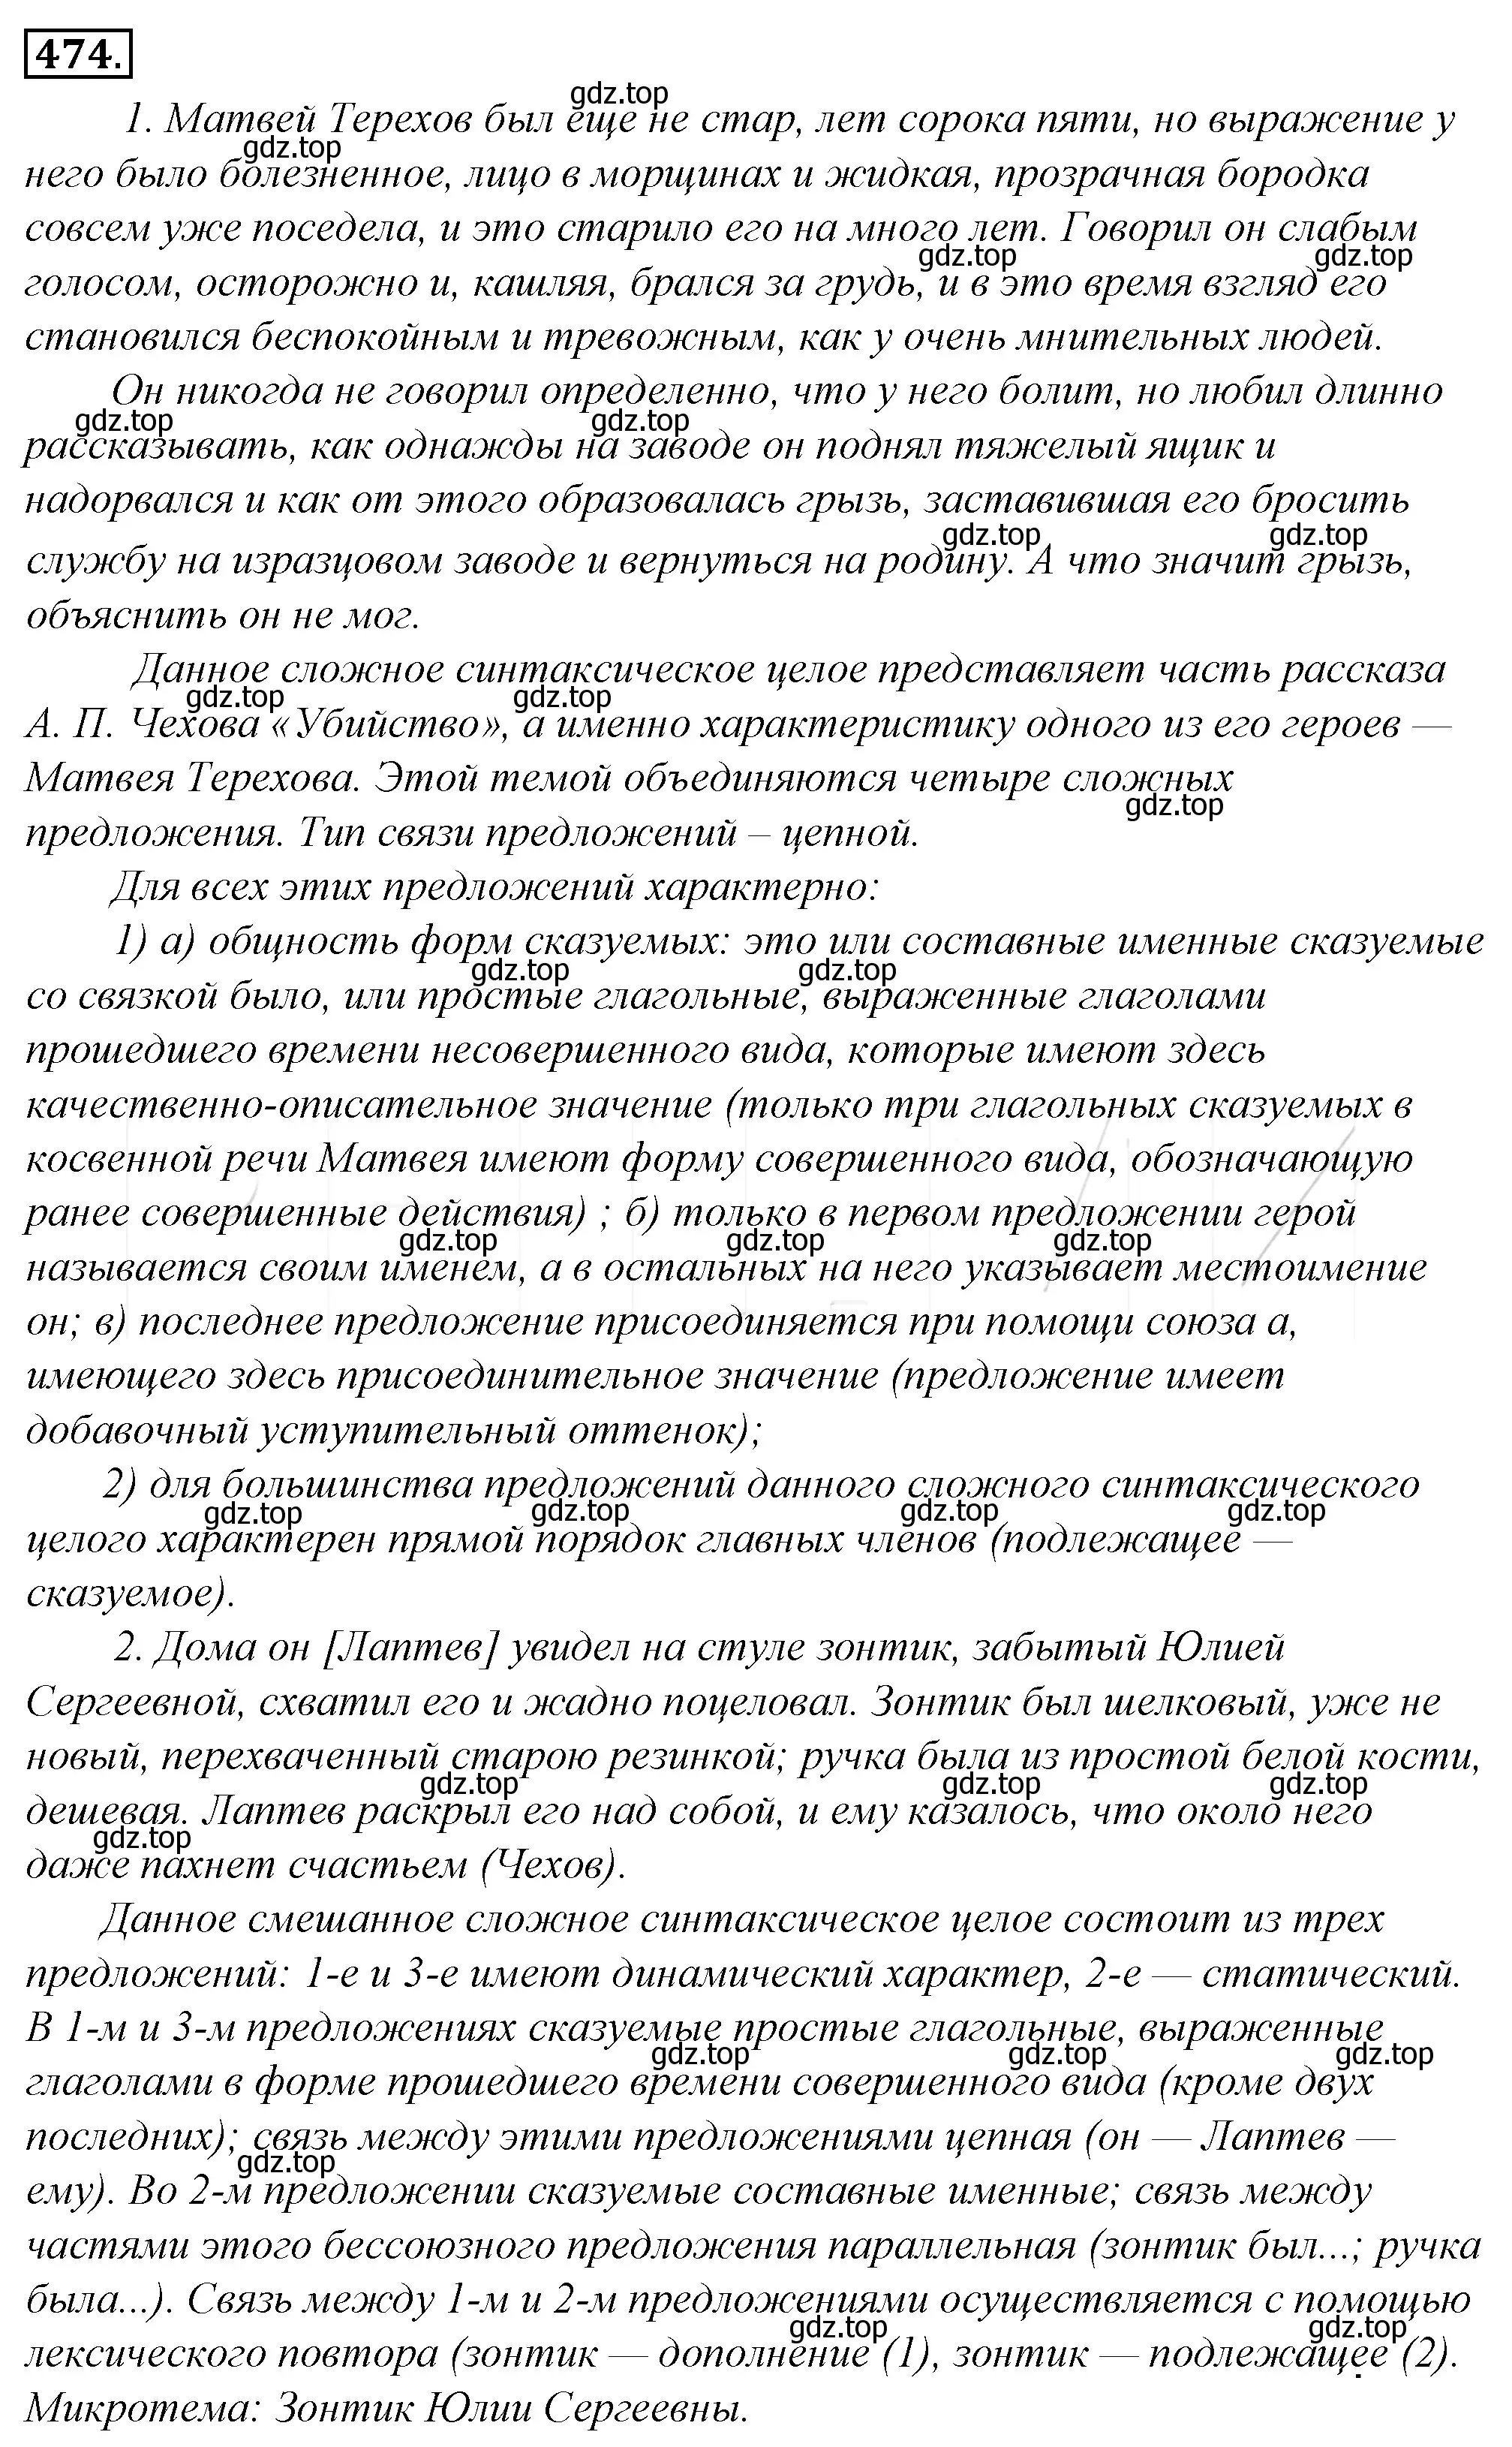 Решение 4. номер 139 (страница 194) гдз по русскому языку 10-11 класс Гольцова, Шамшин, учебник 2 часть